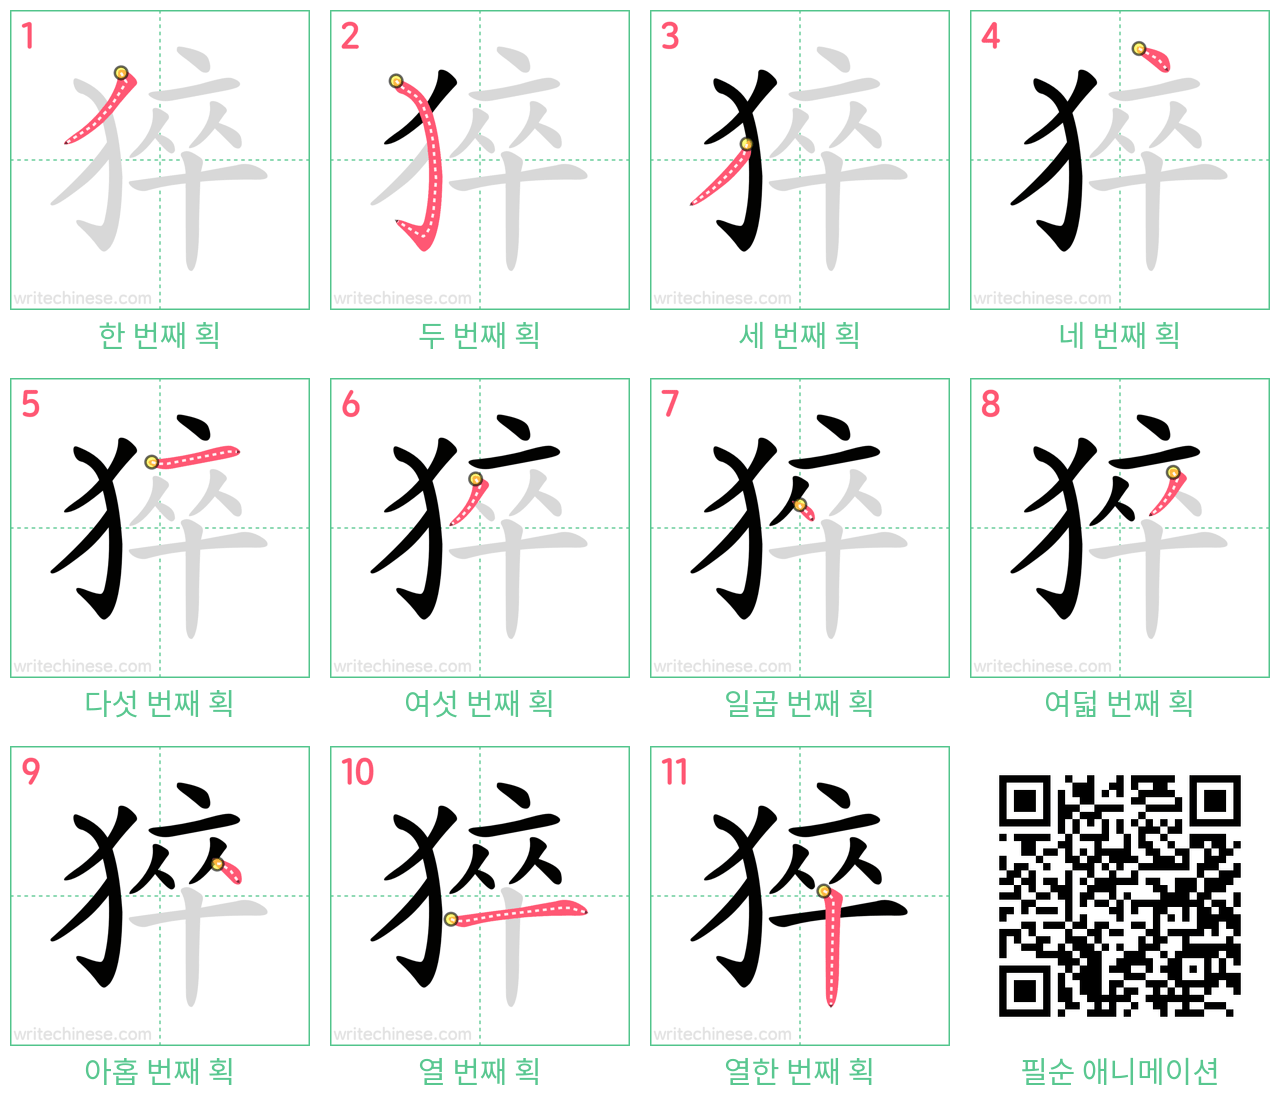 猝 step-by-step stroke order diagrams